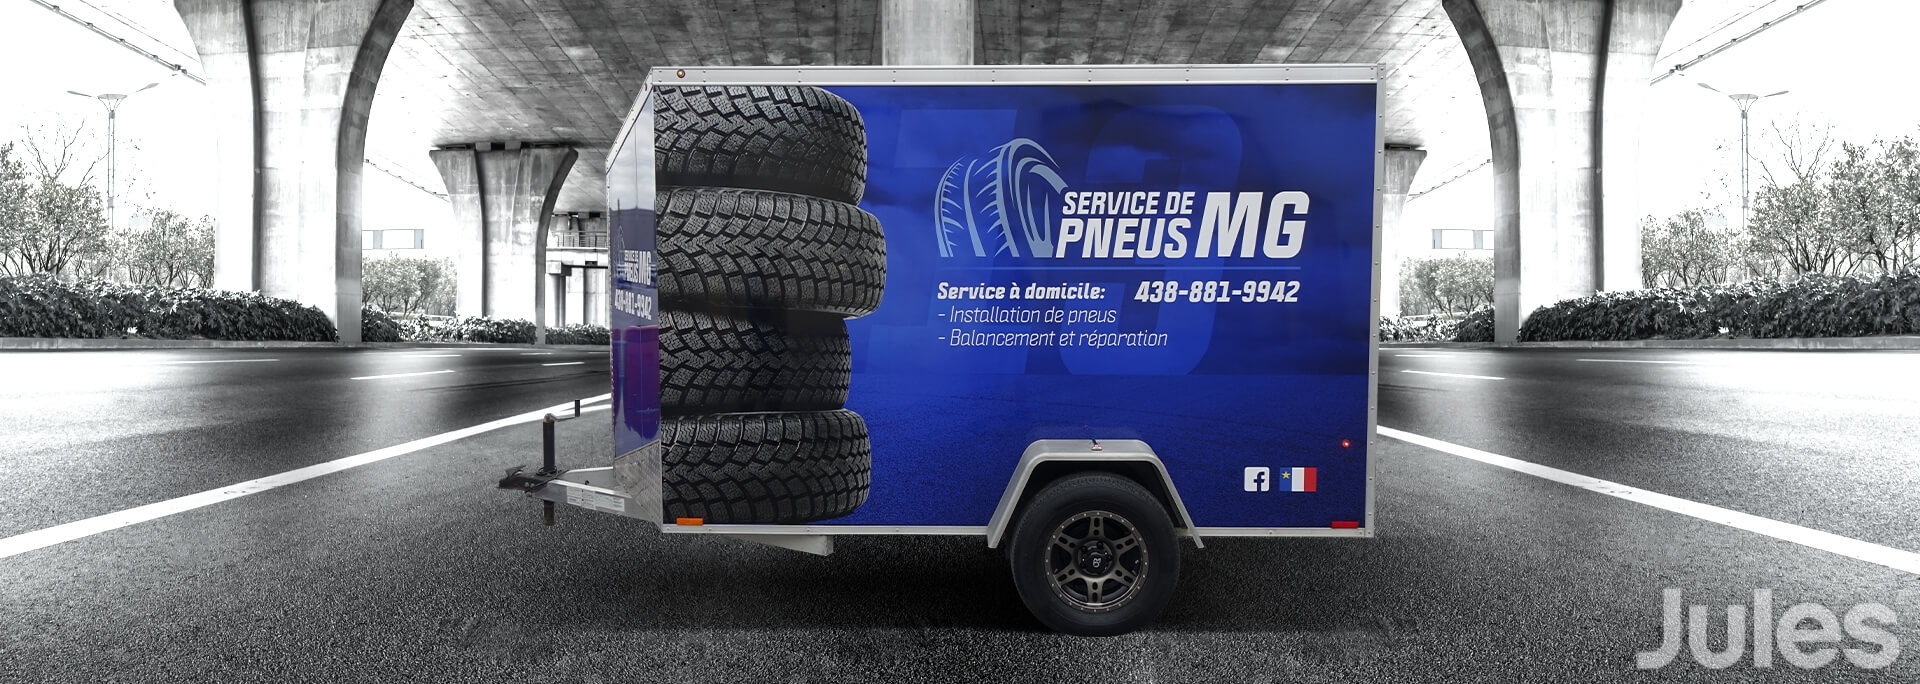 lettrage wrap de remorque pneu mobile installation de pneus balancement et réparation